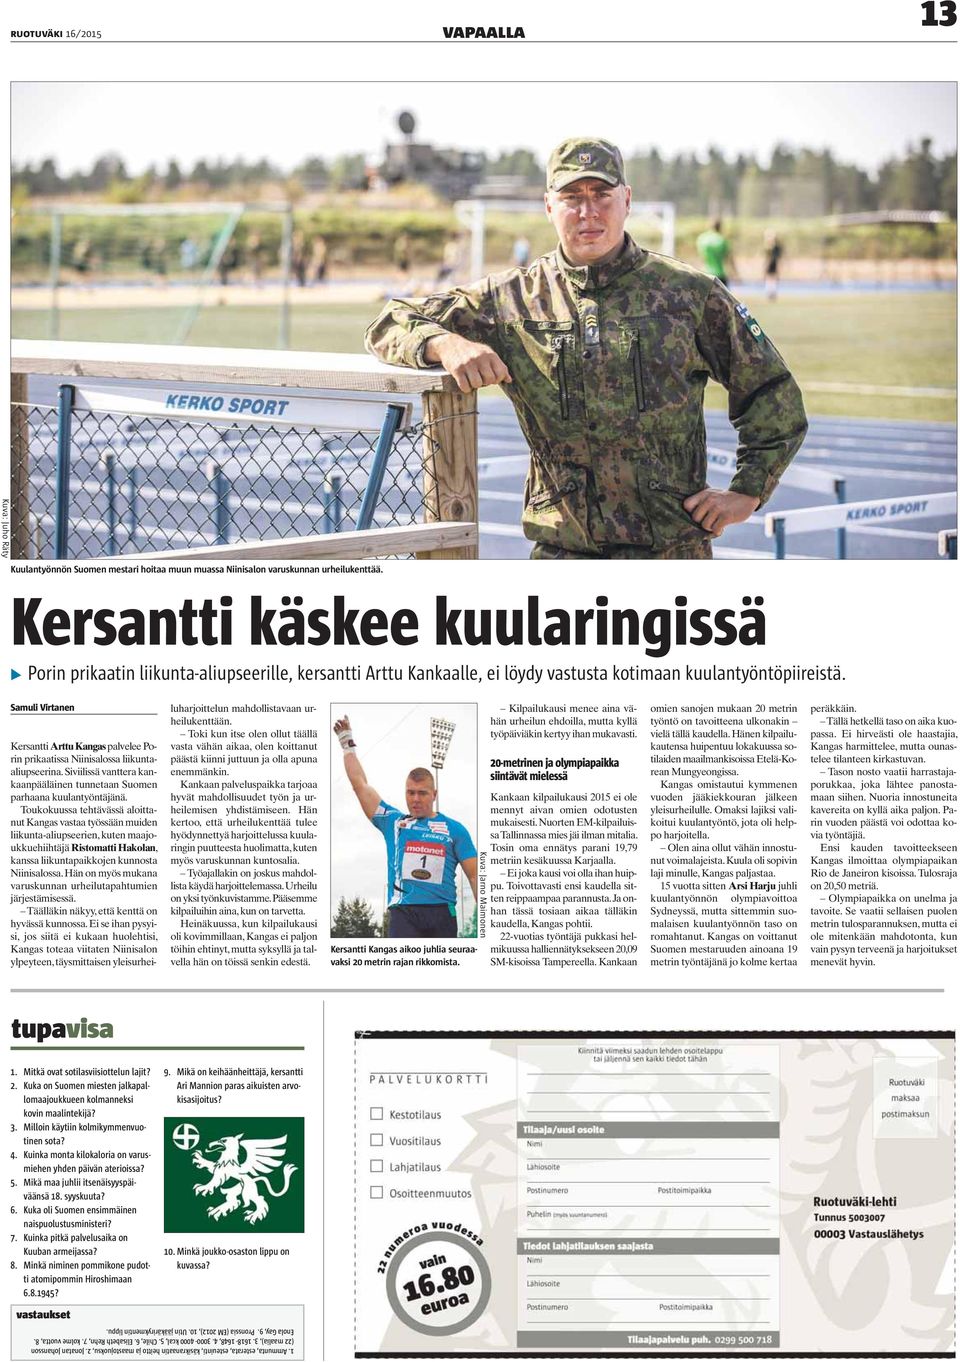 Samuli Virtanen Kersantti Arttu Kangas palvelee Porin prikaatissa Niinisalossa liikuntaaliupseerina. Siviilissä vanttera kankaanpääläinen tunnetaan Suomen parhaana kuulantyöntäjänä.